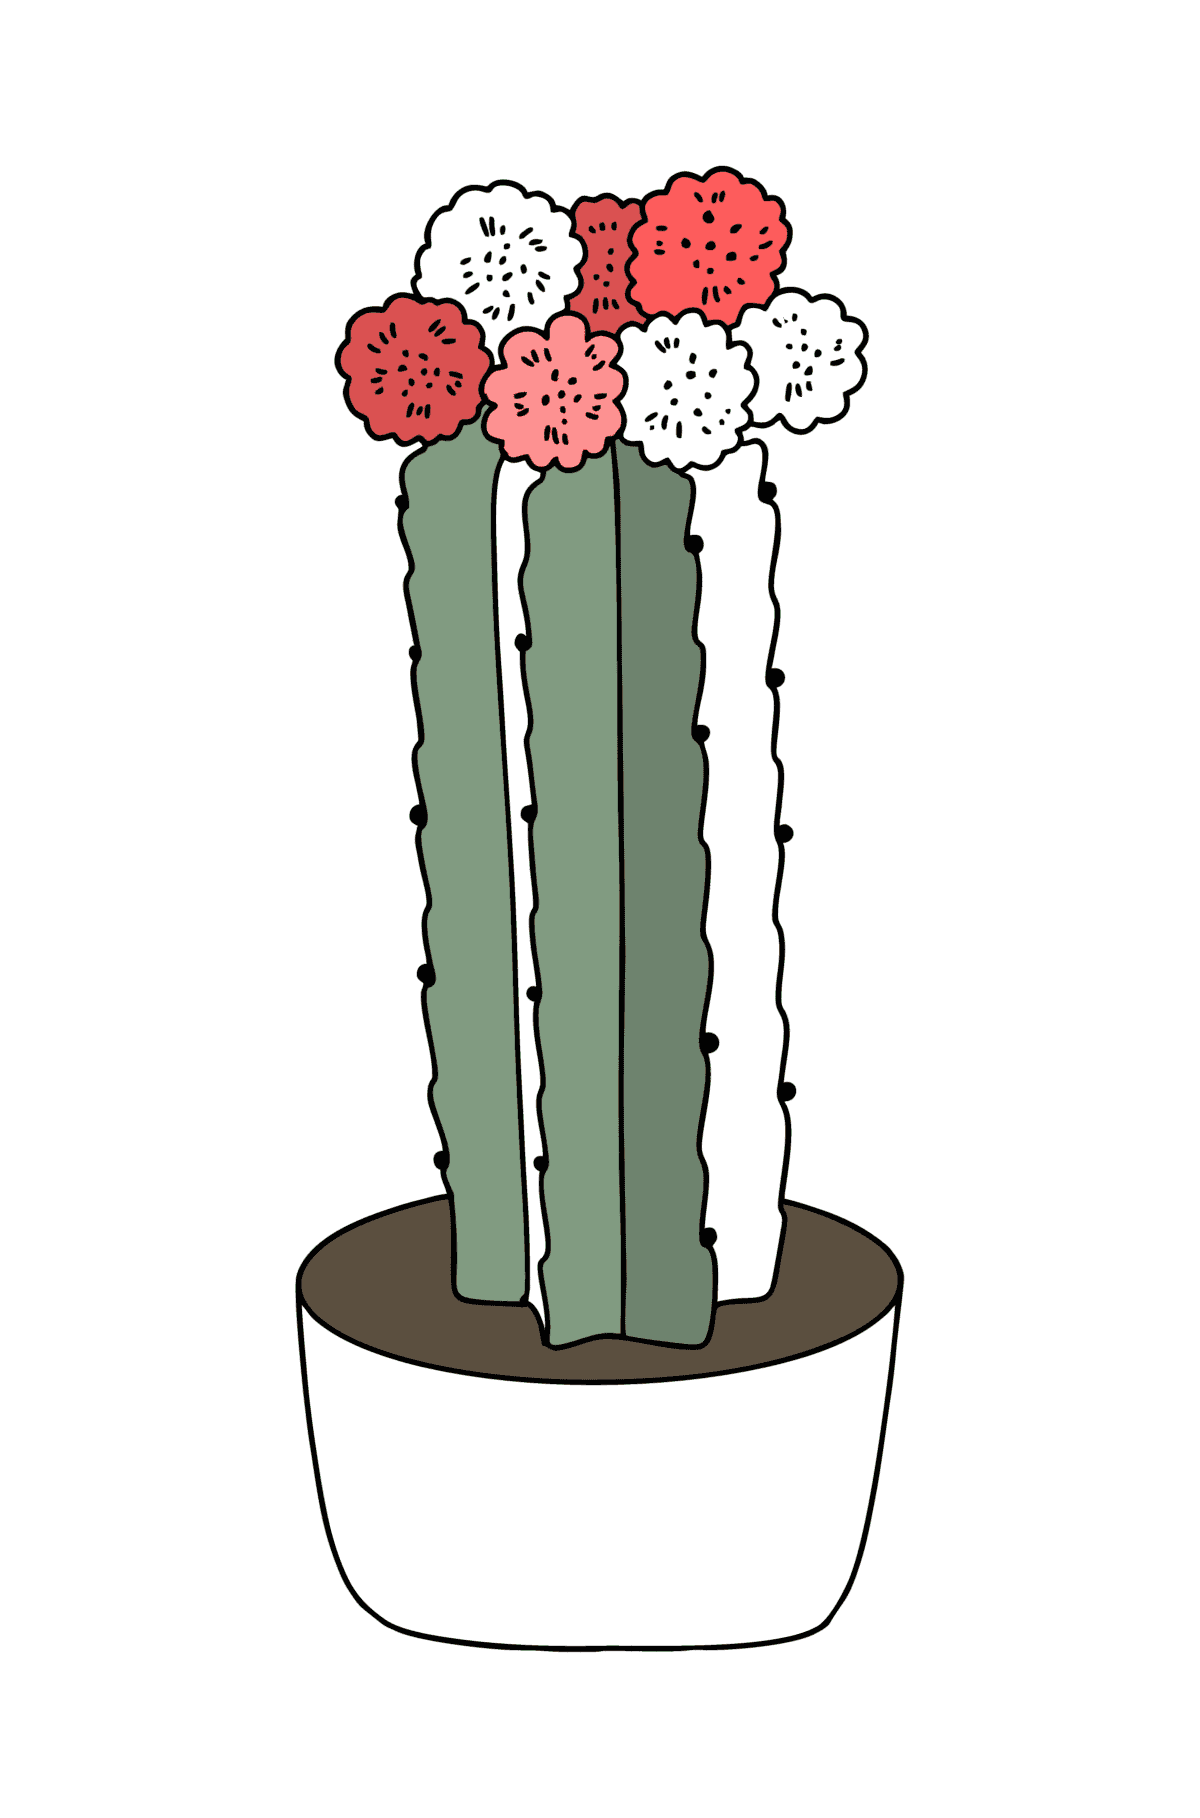 Kolorowanka Kaktus z różowymi kwiatami - Kolorowanki dla dzieci